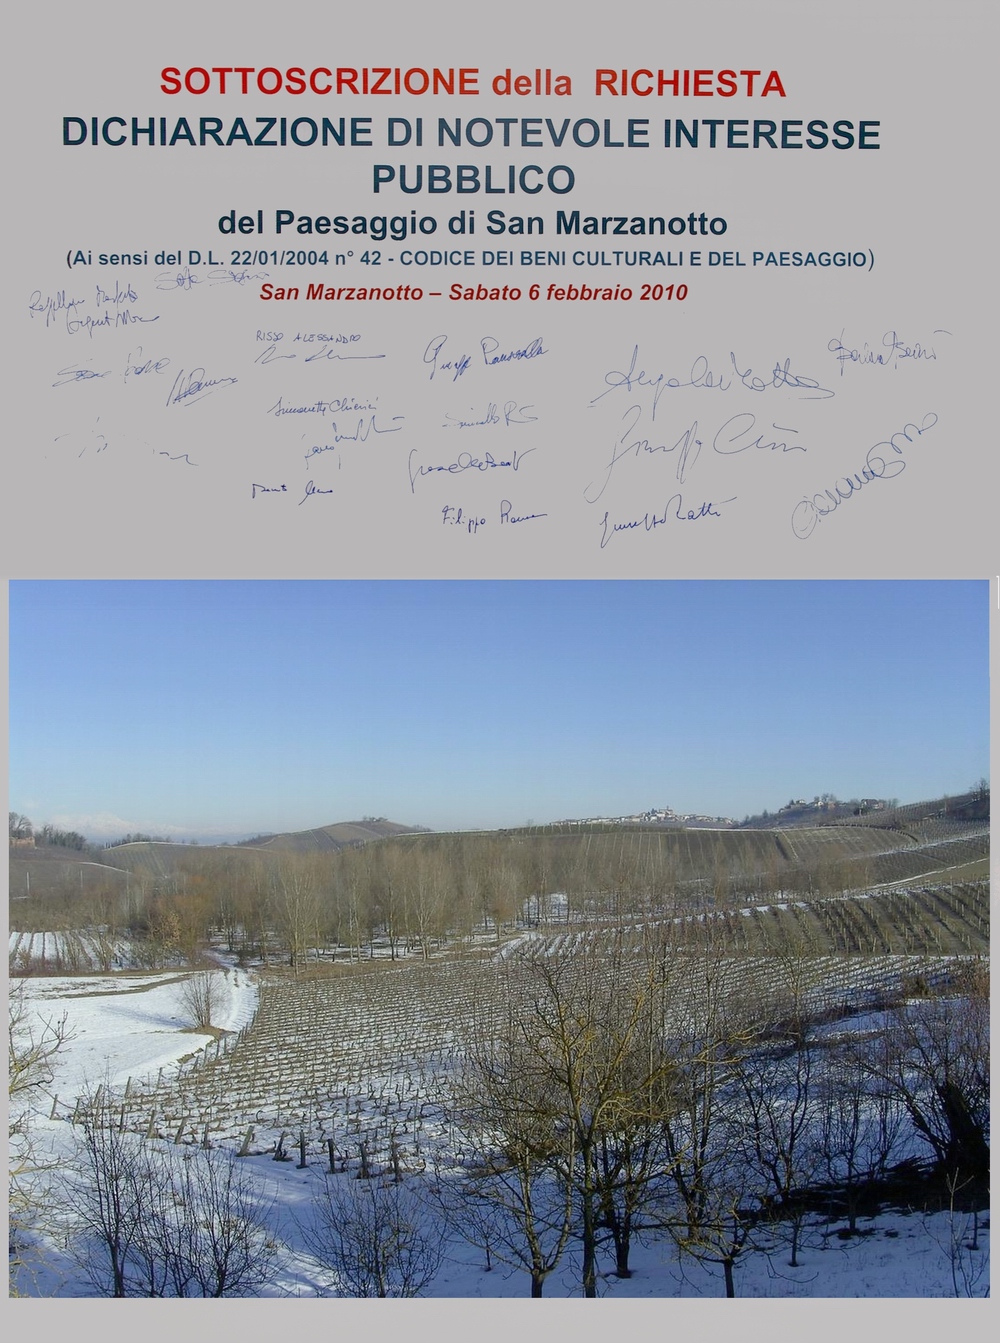 Sottoscrizione della dichiarazione di notevole interesse pubblico del paesaggio di San Marzanotto.